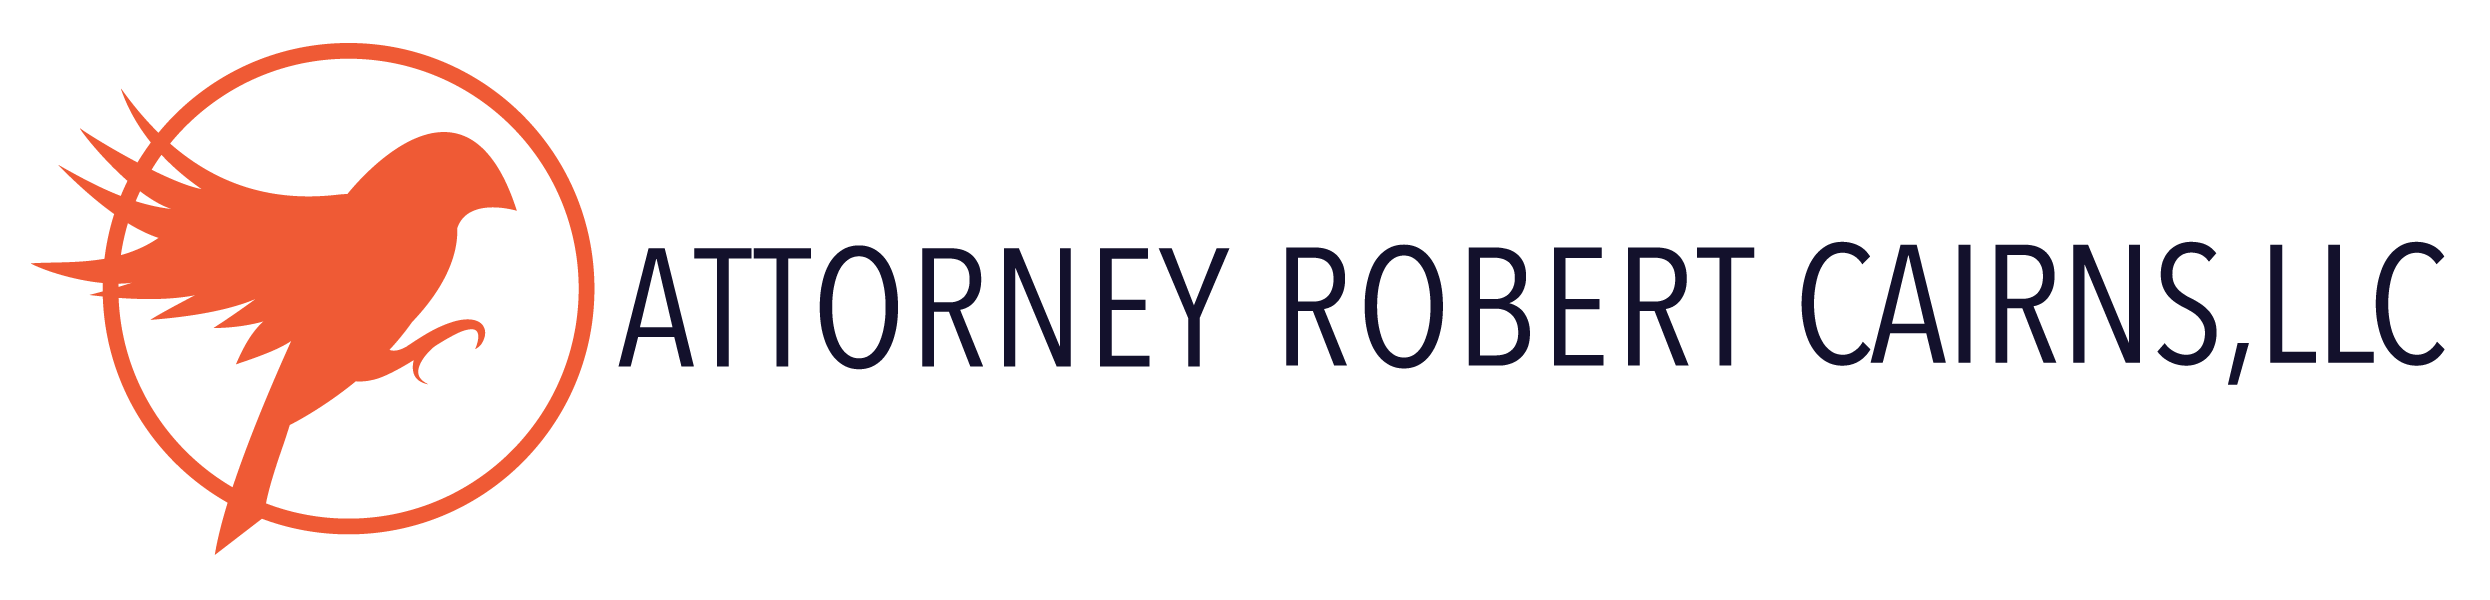 ATTORNEY ROBERT CAIRNS, LLC